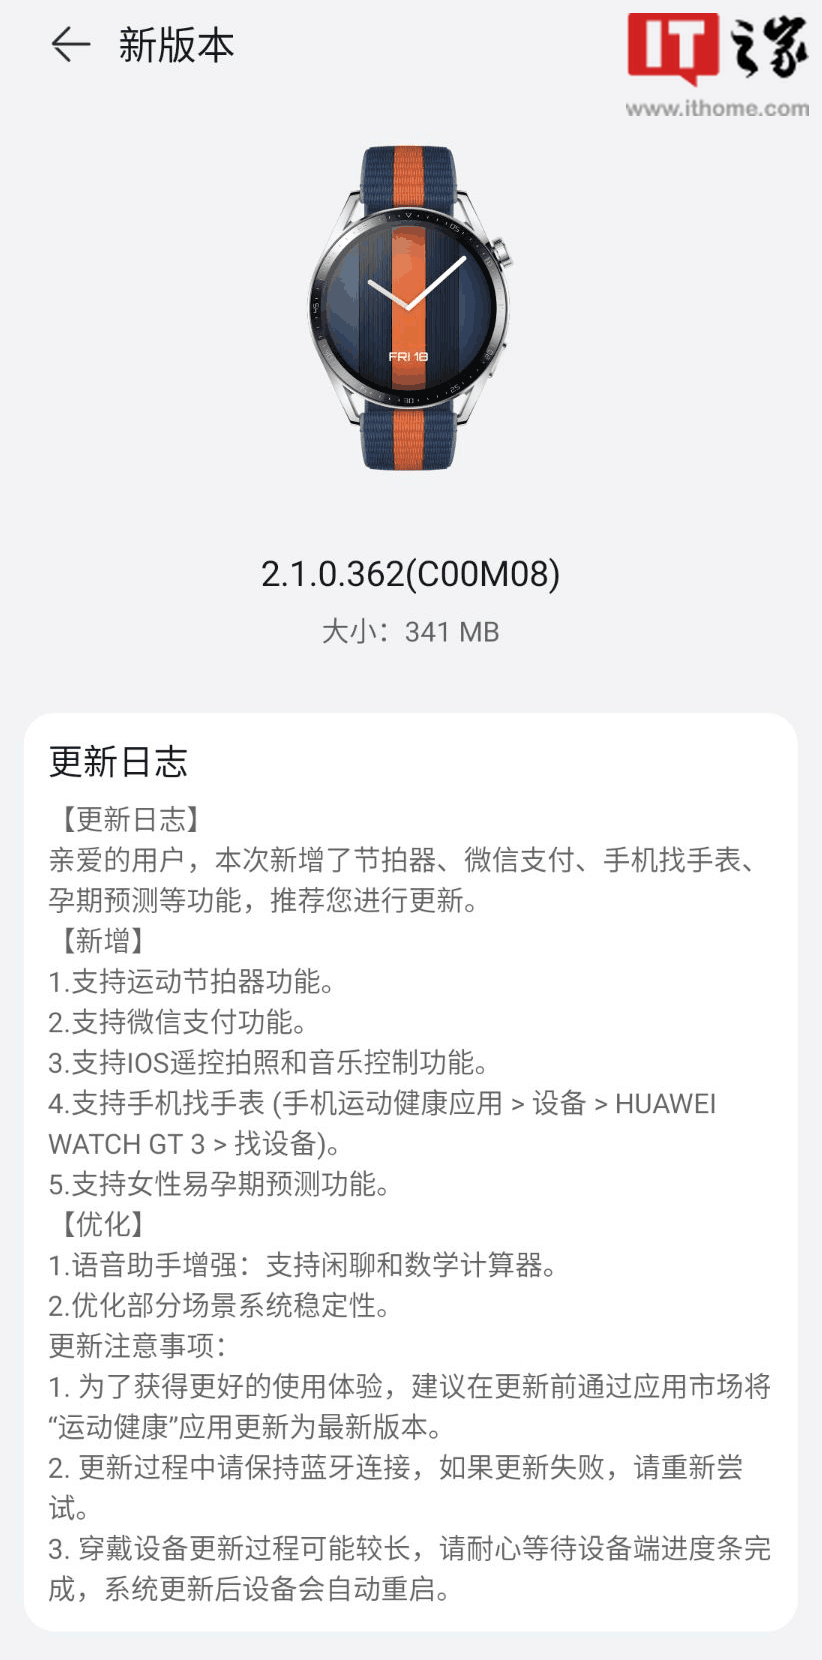 Huawei Watch GT 3 getting HarmonyOS 2.1.0.362 update-1